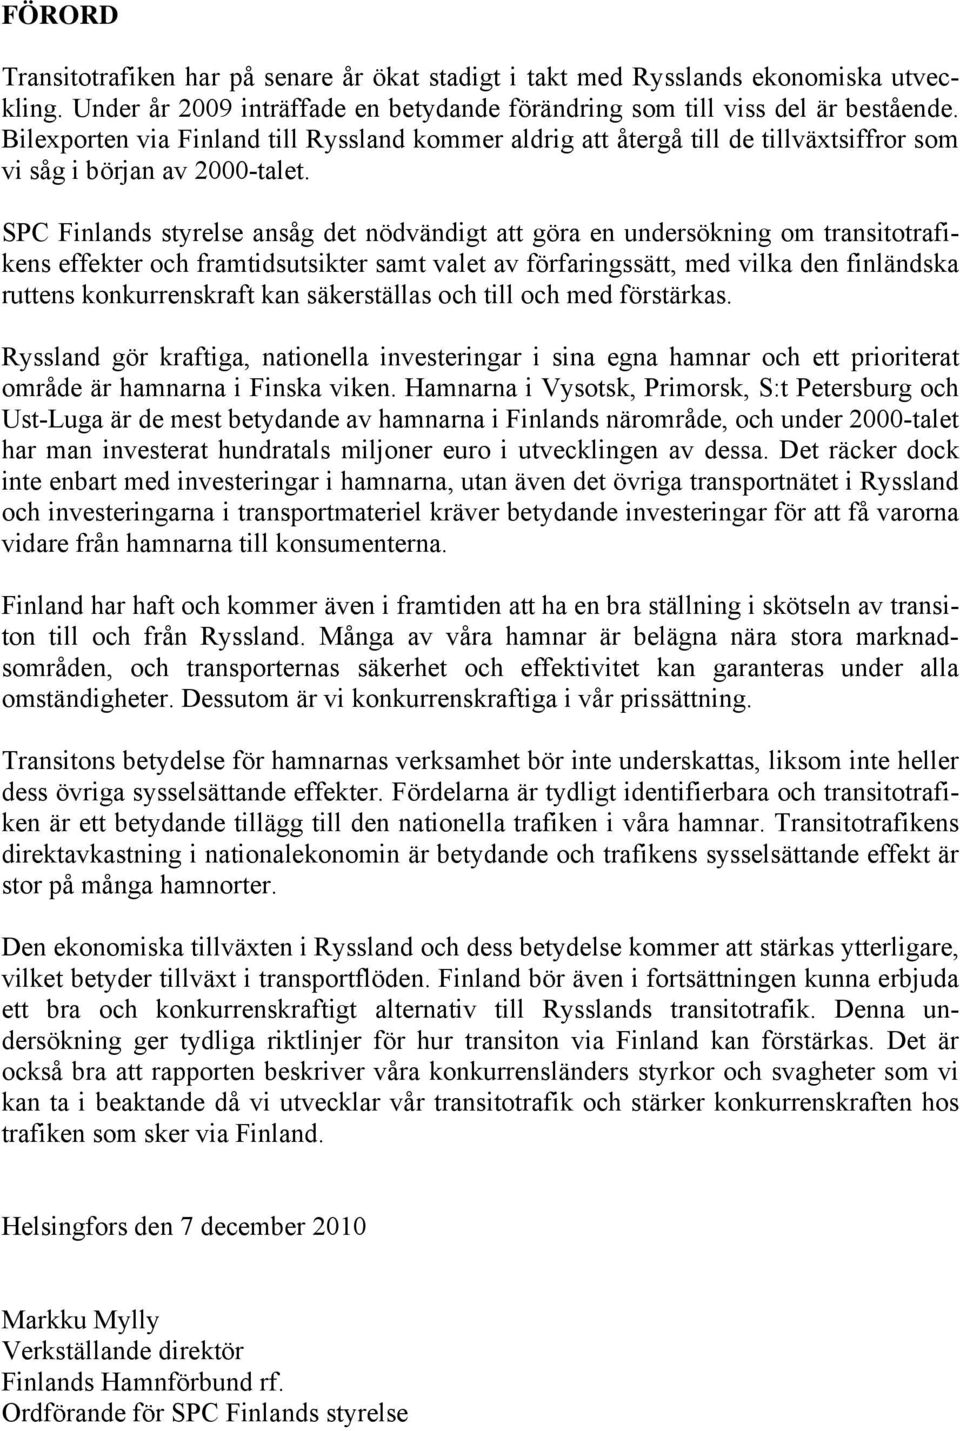 SPC Finlands styrelse ansåg det nödvändigt att göra en undersökning om transitotrafikens effekter och framtidsutsikter samt valet av förfaringssätt, med vilka den finländska ruttens konkurrenskraft